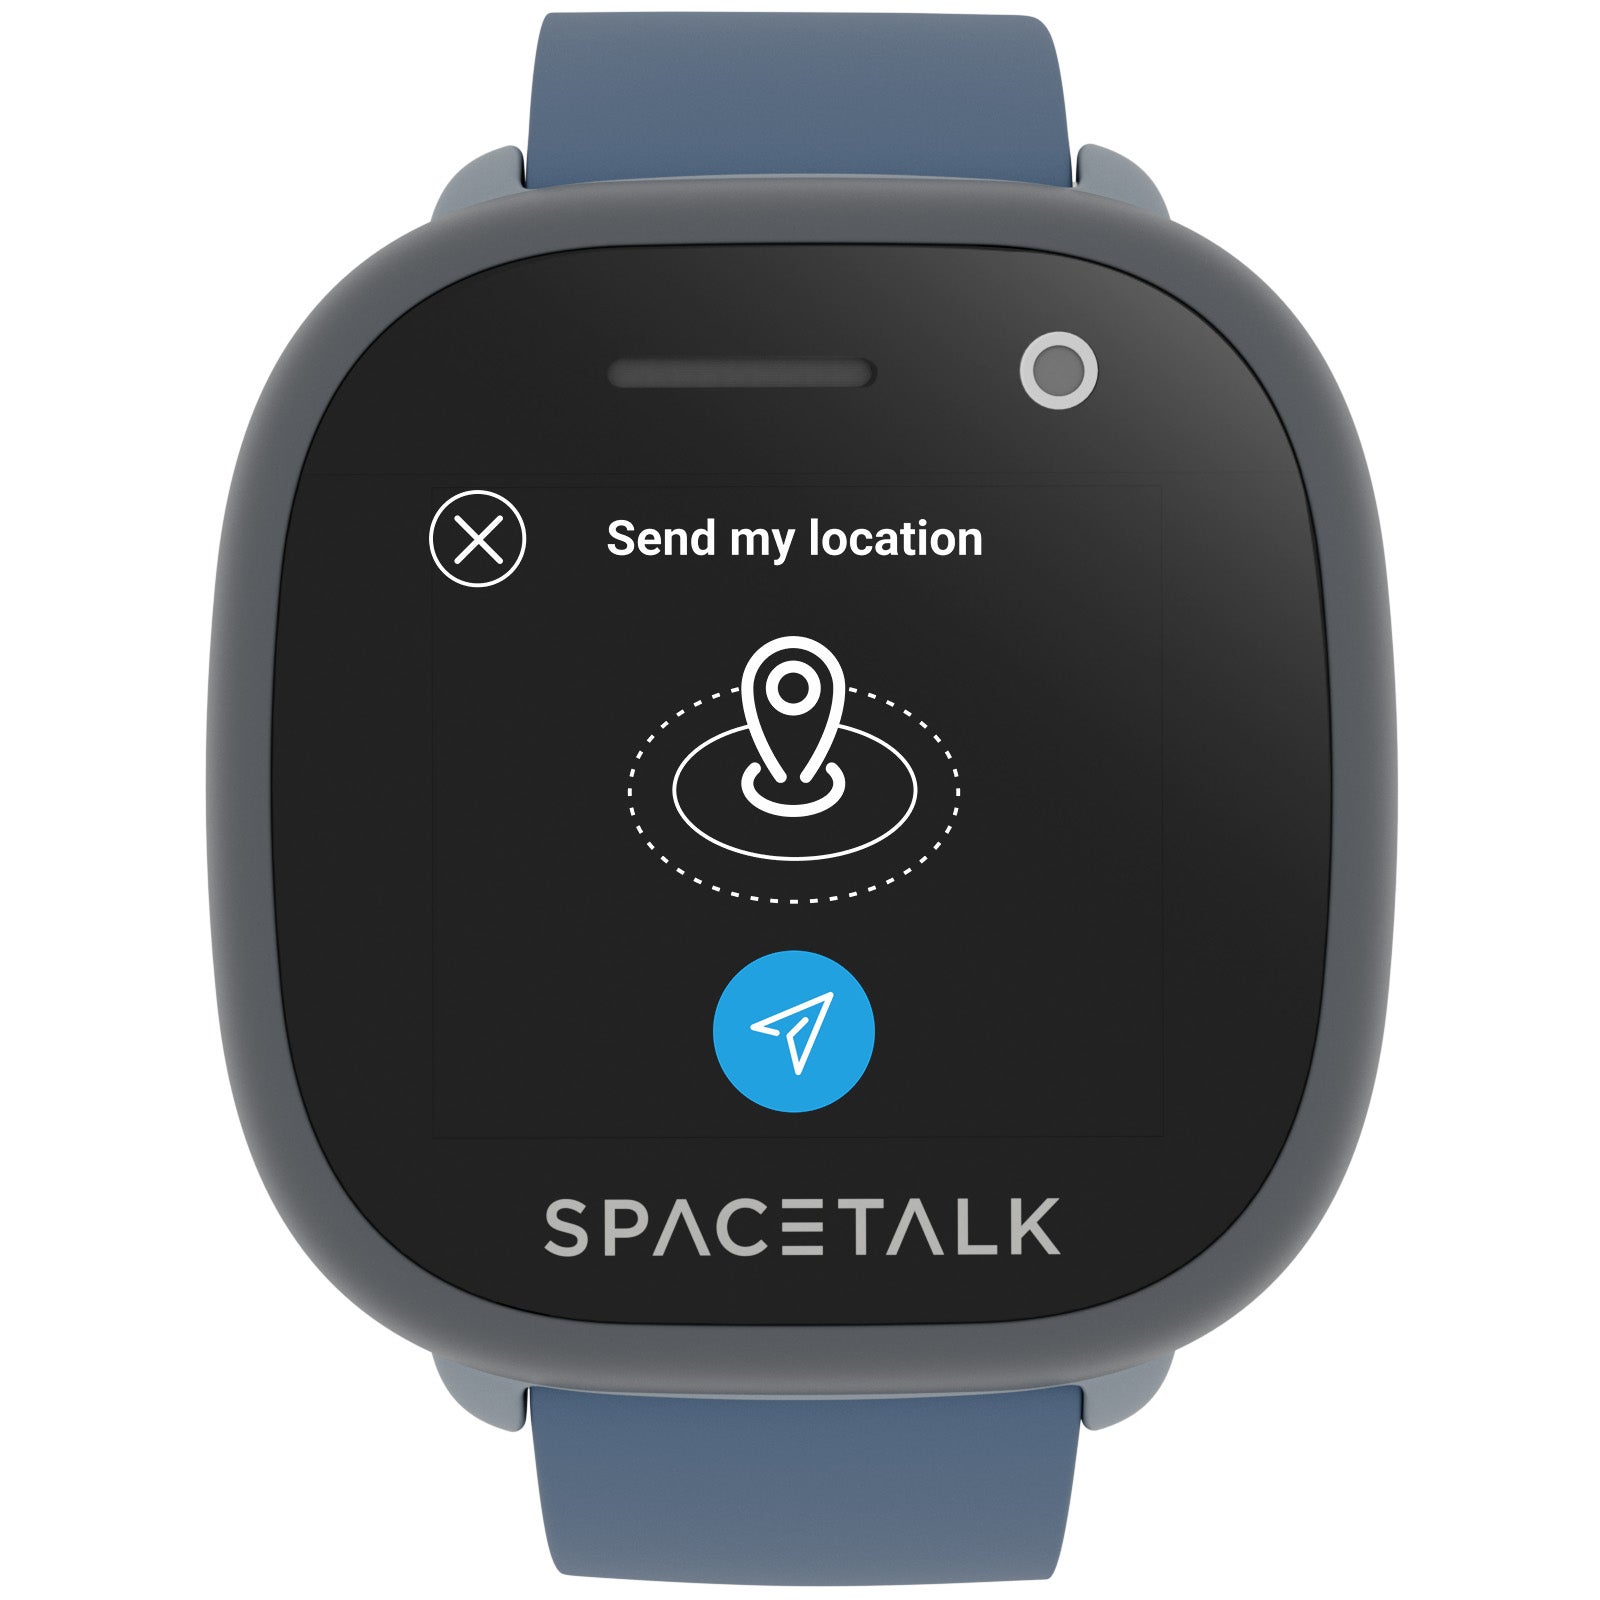 Spacetalk updates to 4G with the Spacetalk Adventurer Kids smartwatch